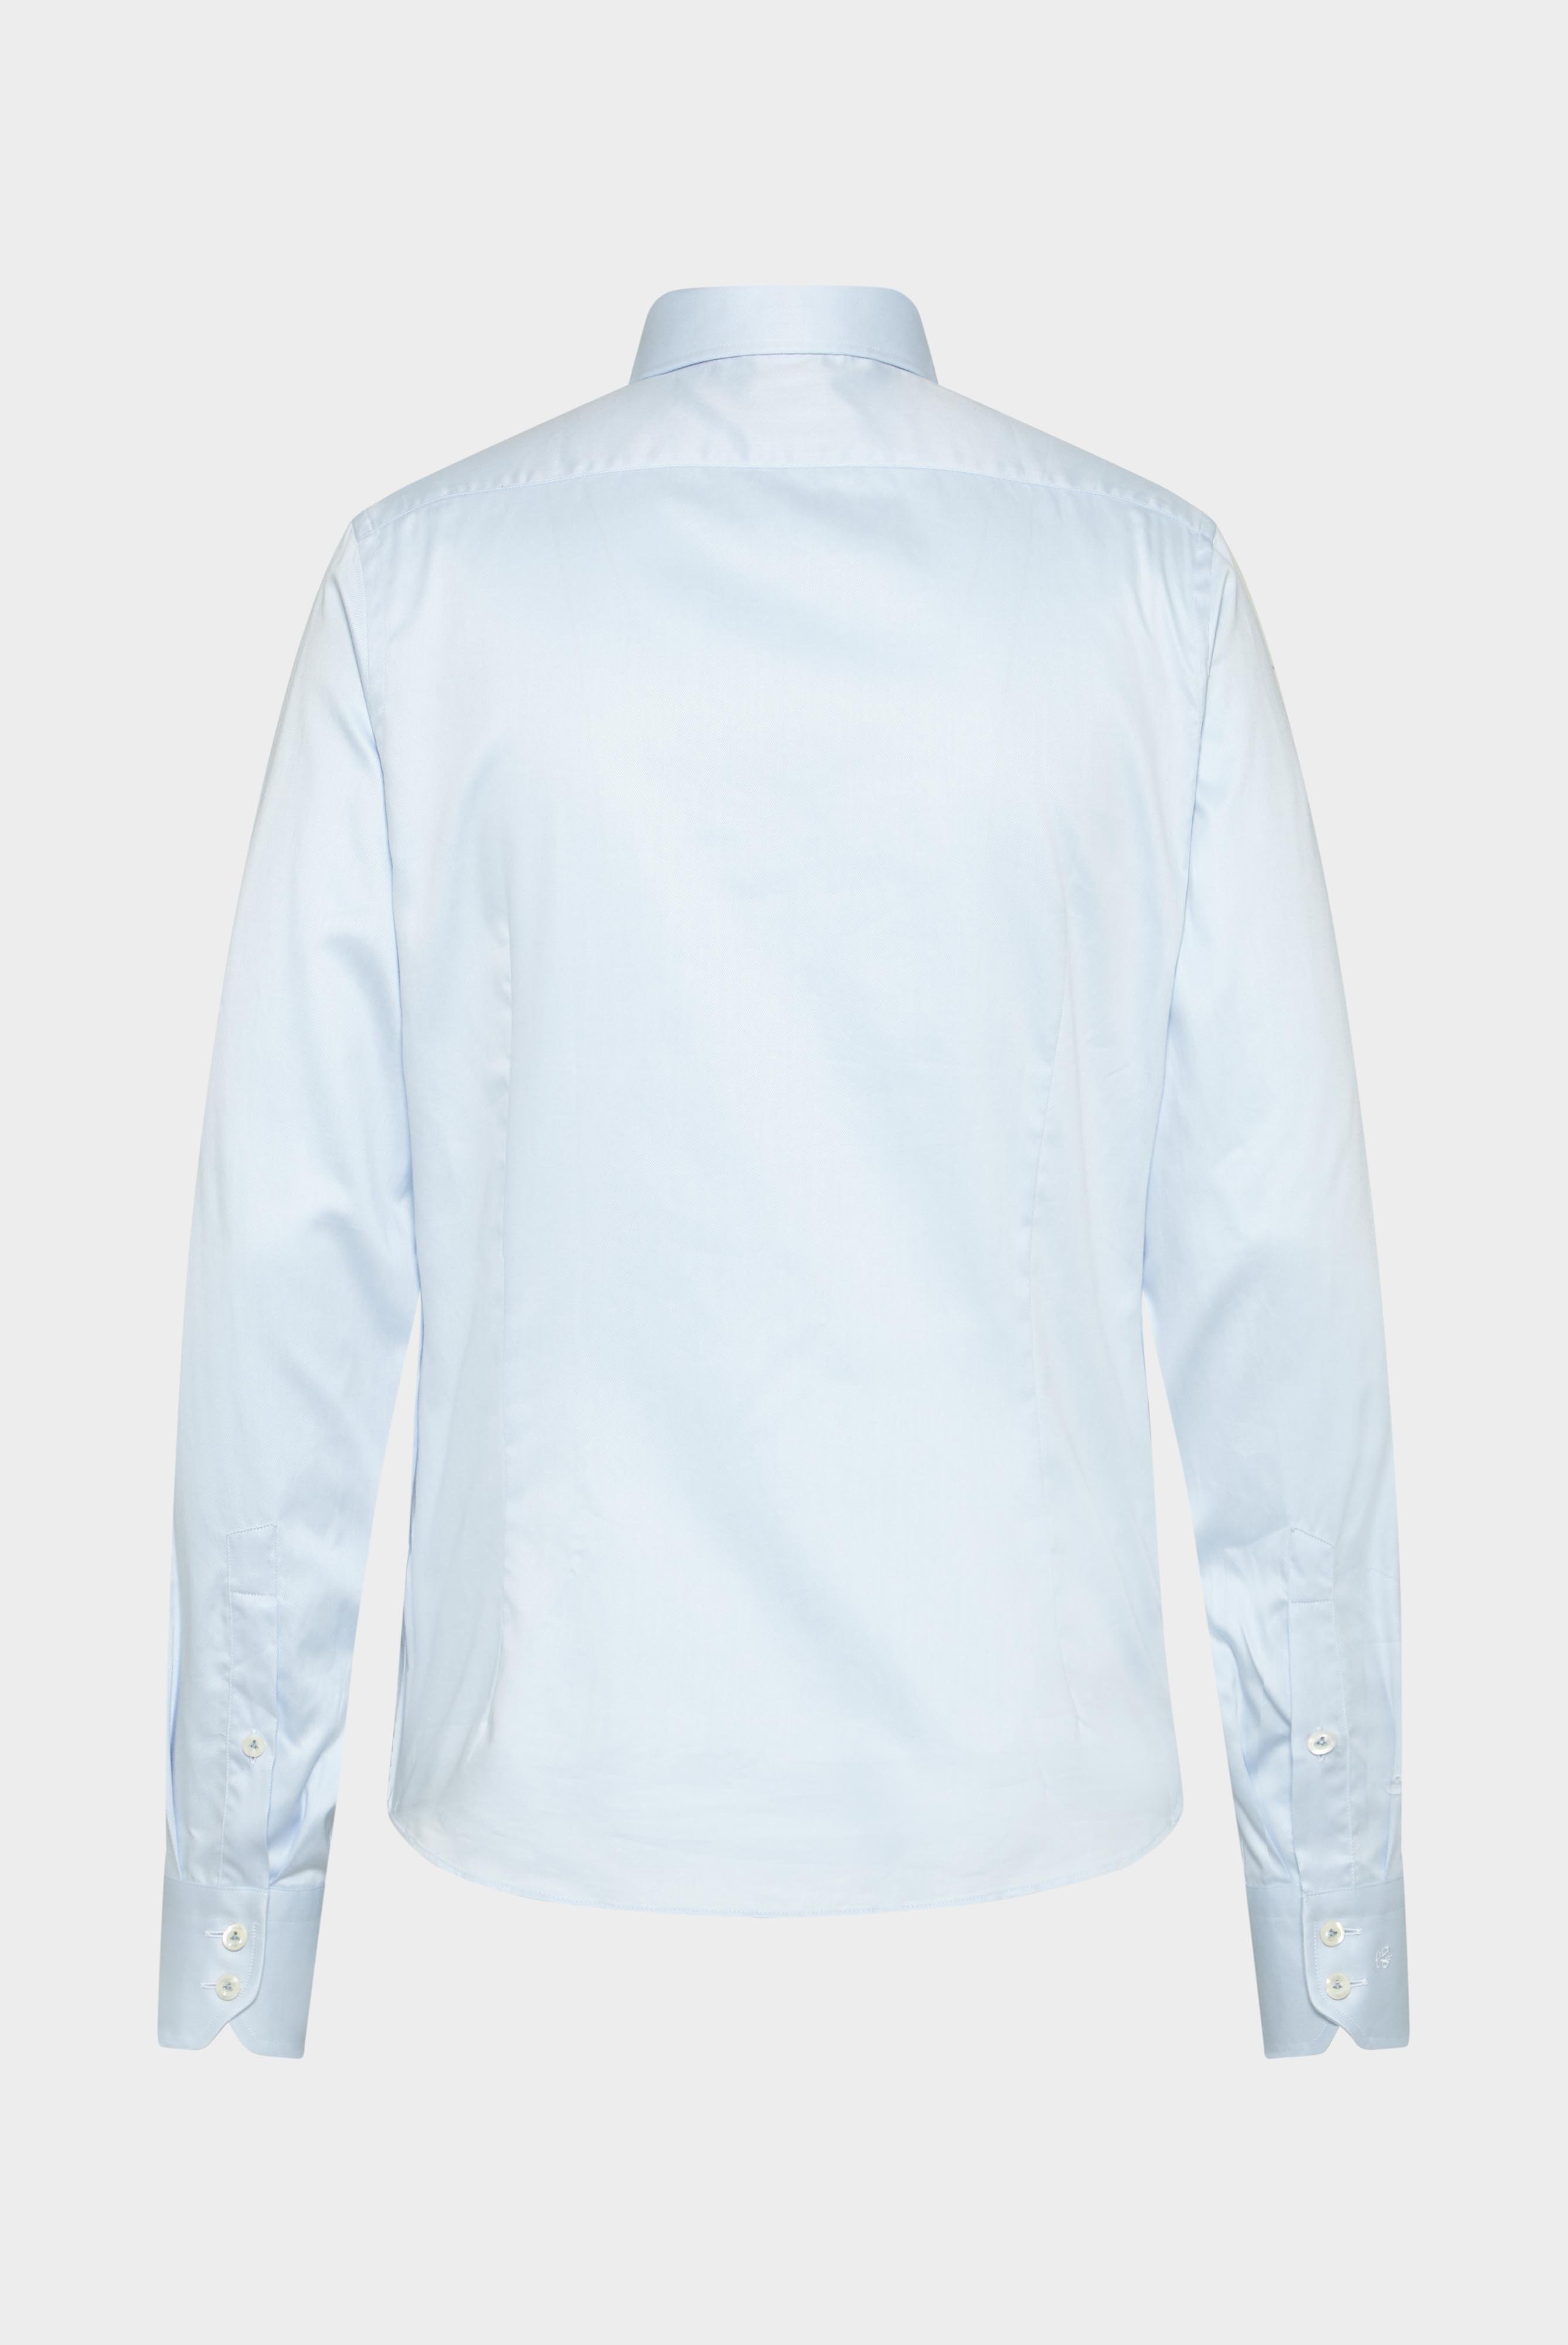 Business Shirts+Fine Cotton Twill Shirt+20.2010.NV.130148.710.37